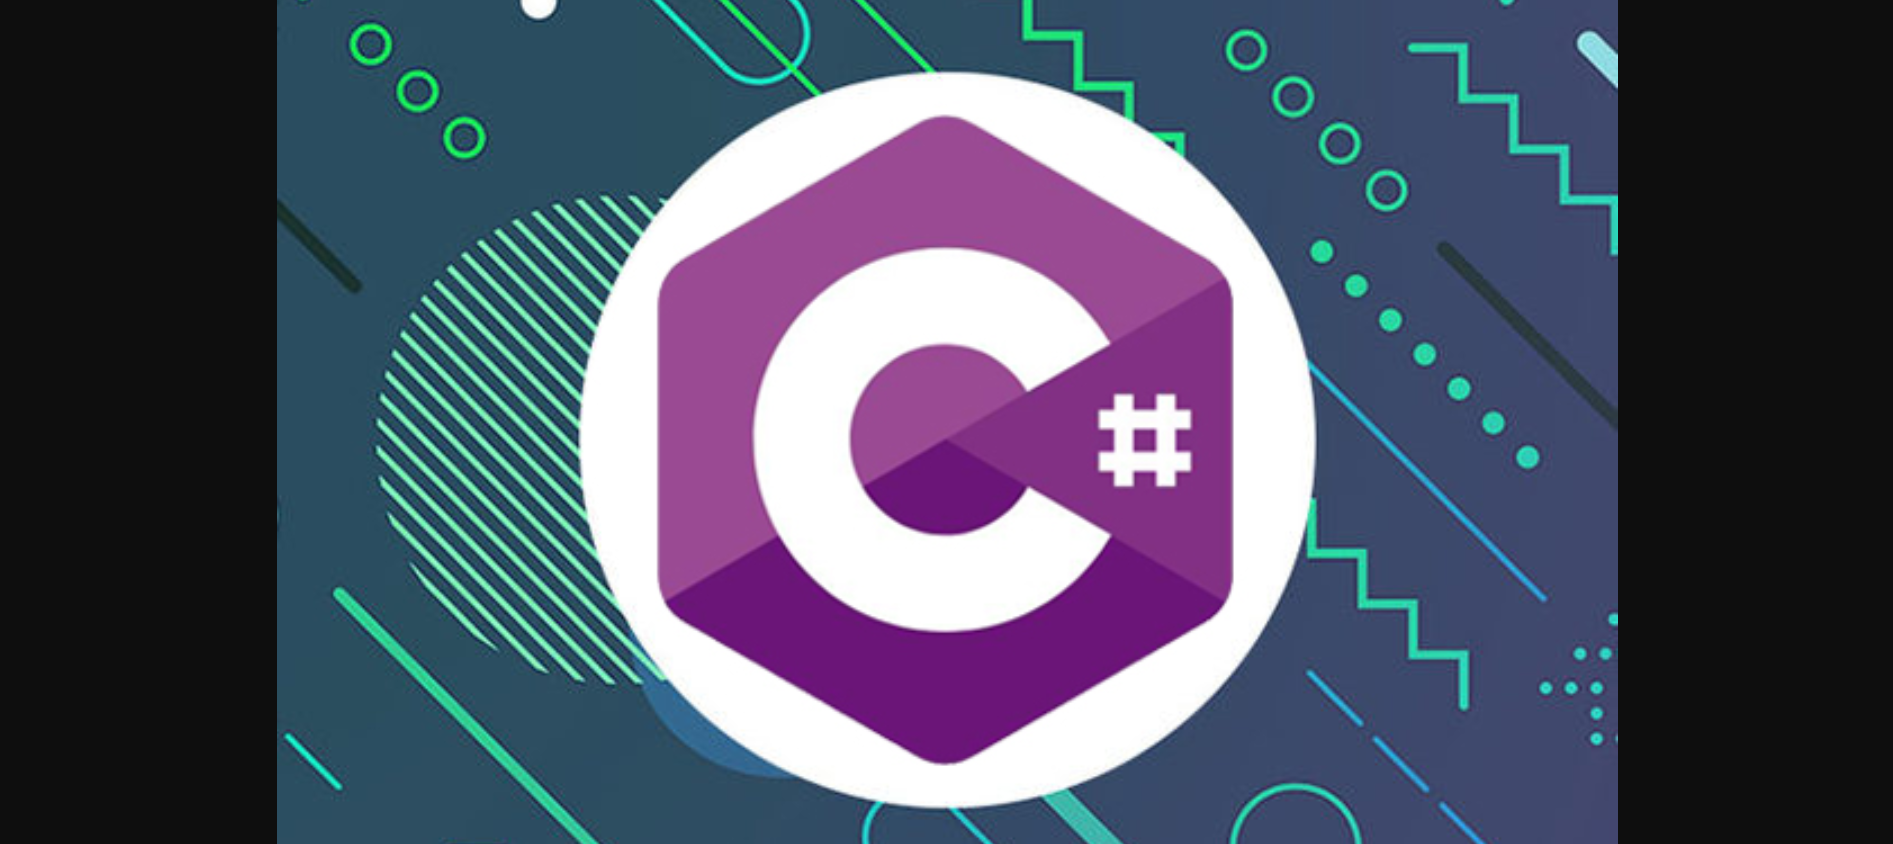 Linguagem de programação C# volta a ganhar popularidade